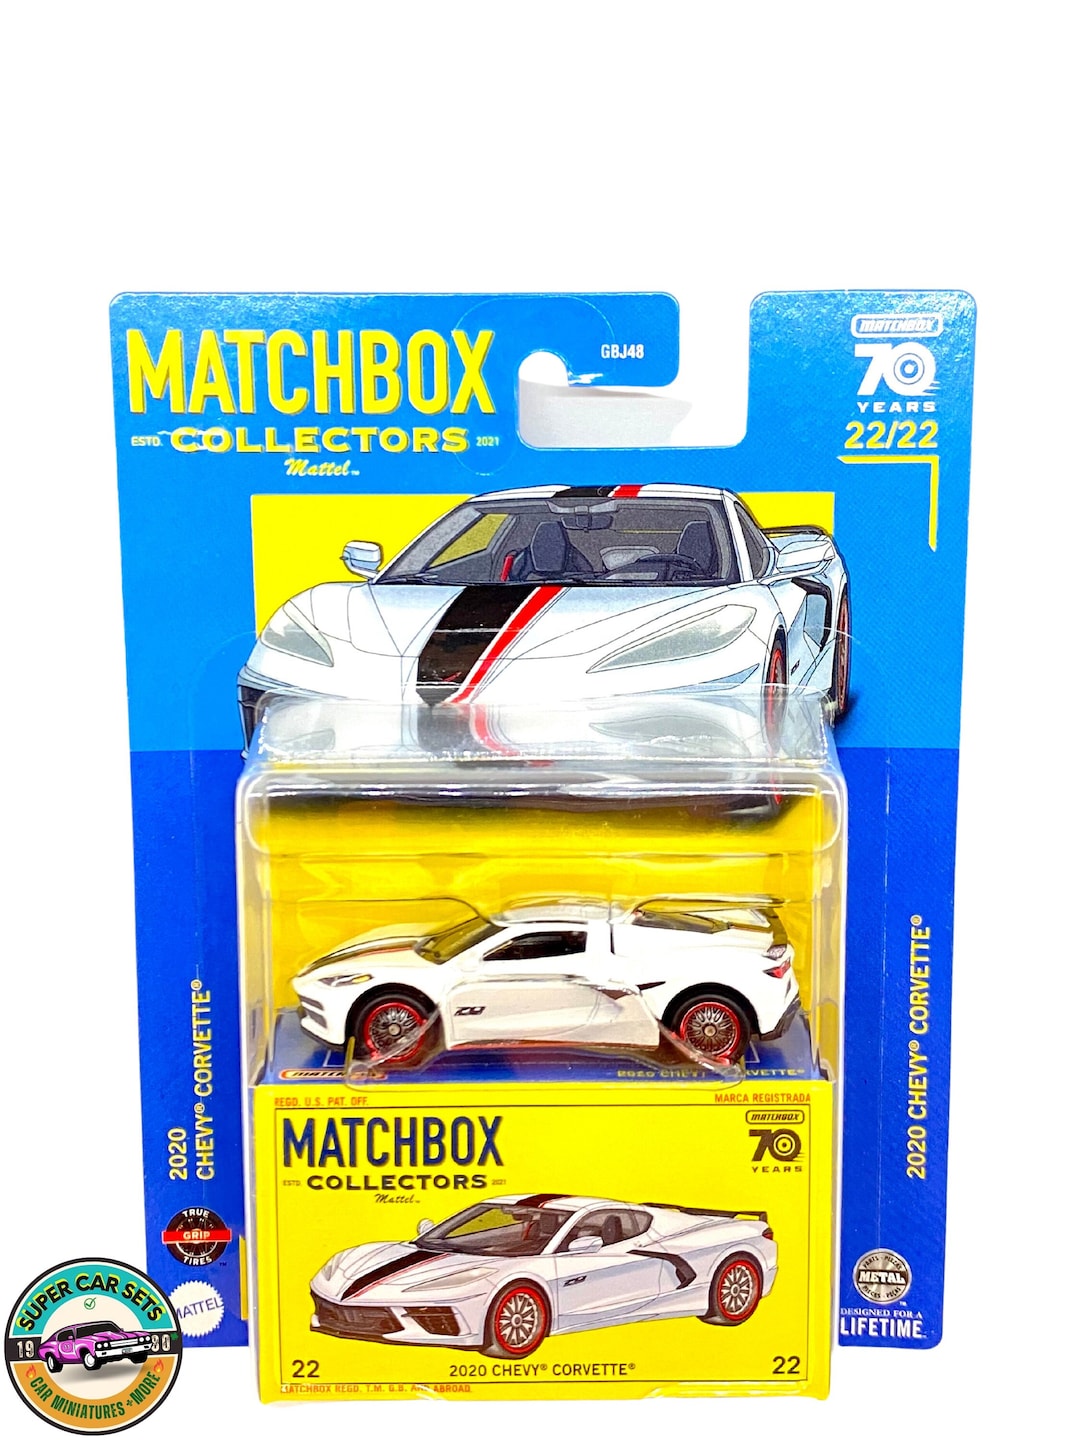 2020 Chevy Corvette Matchbox Collectors 22/22 - Etsy